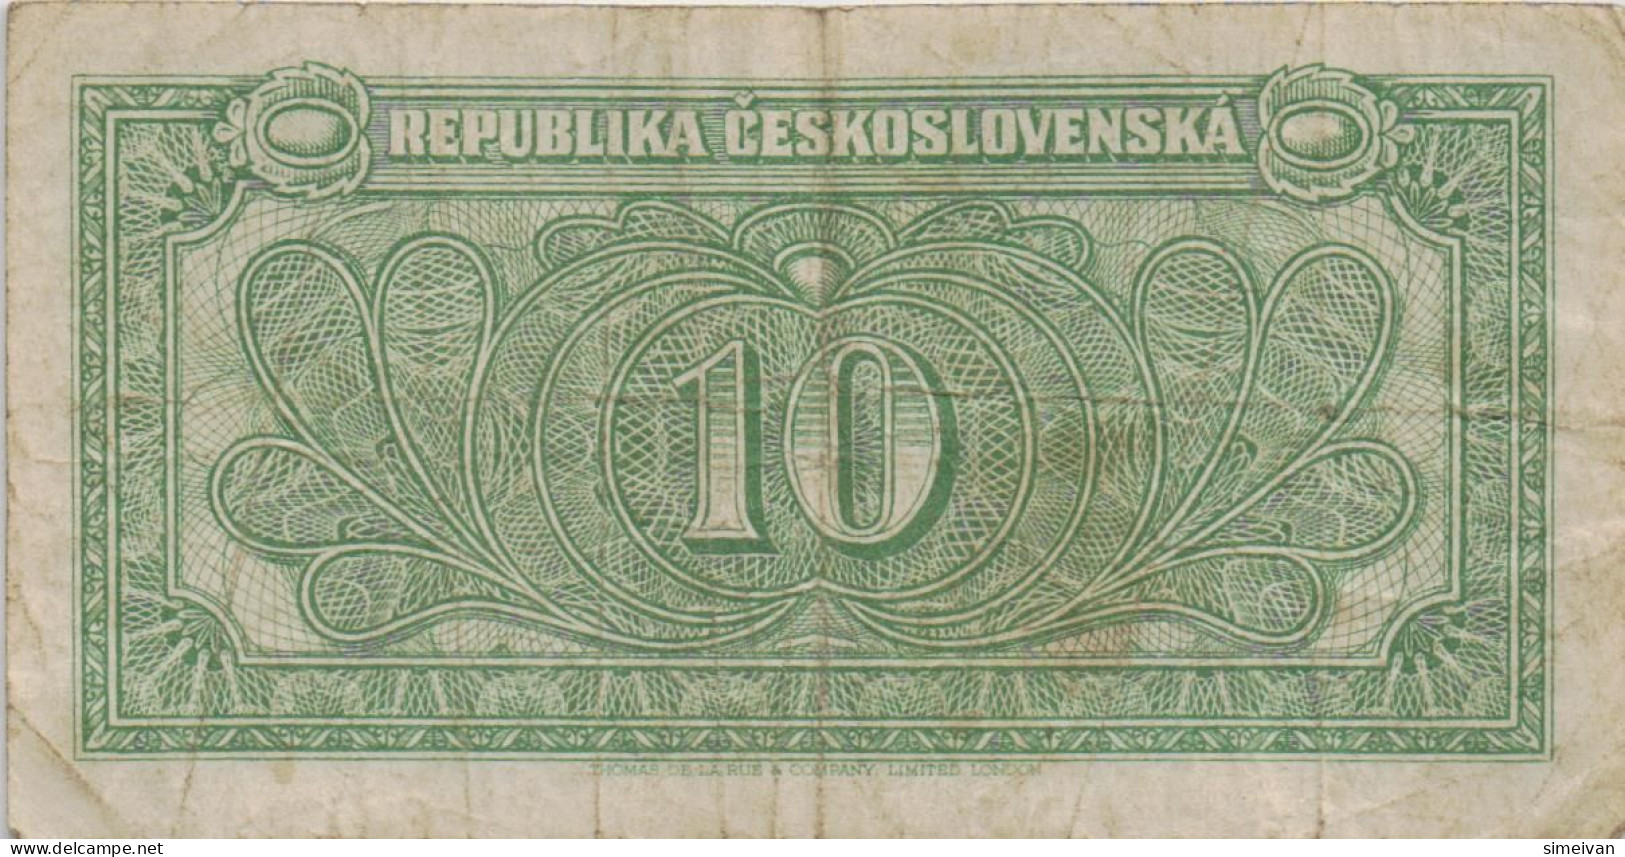 Czechoslovakia 10 Korun ND (1945) P-60a Banknote Europe Currency Tchécoslovaquie Tschechoslowakei #5226 - Tsjechoslowakije